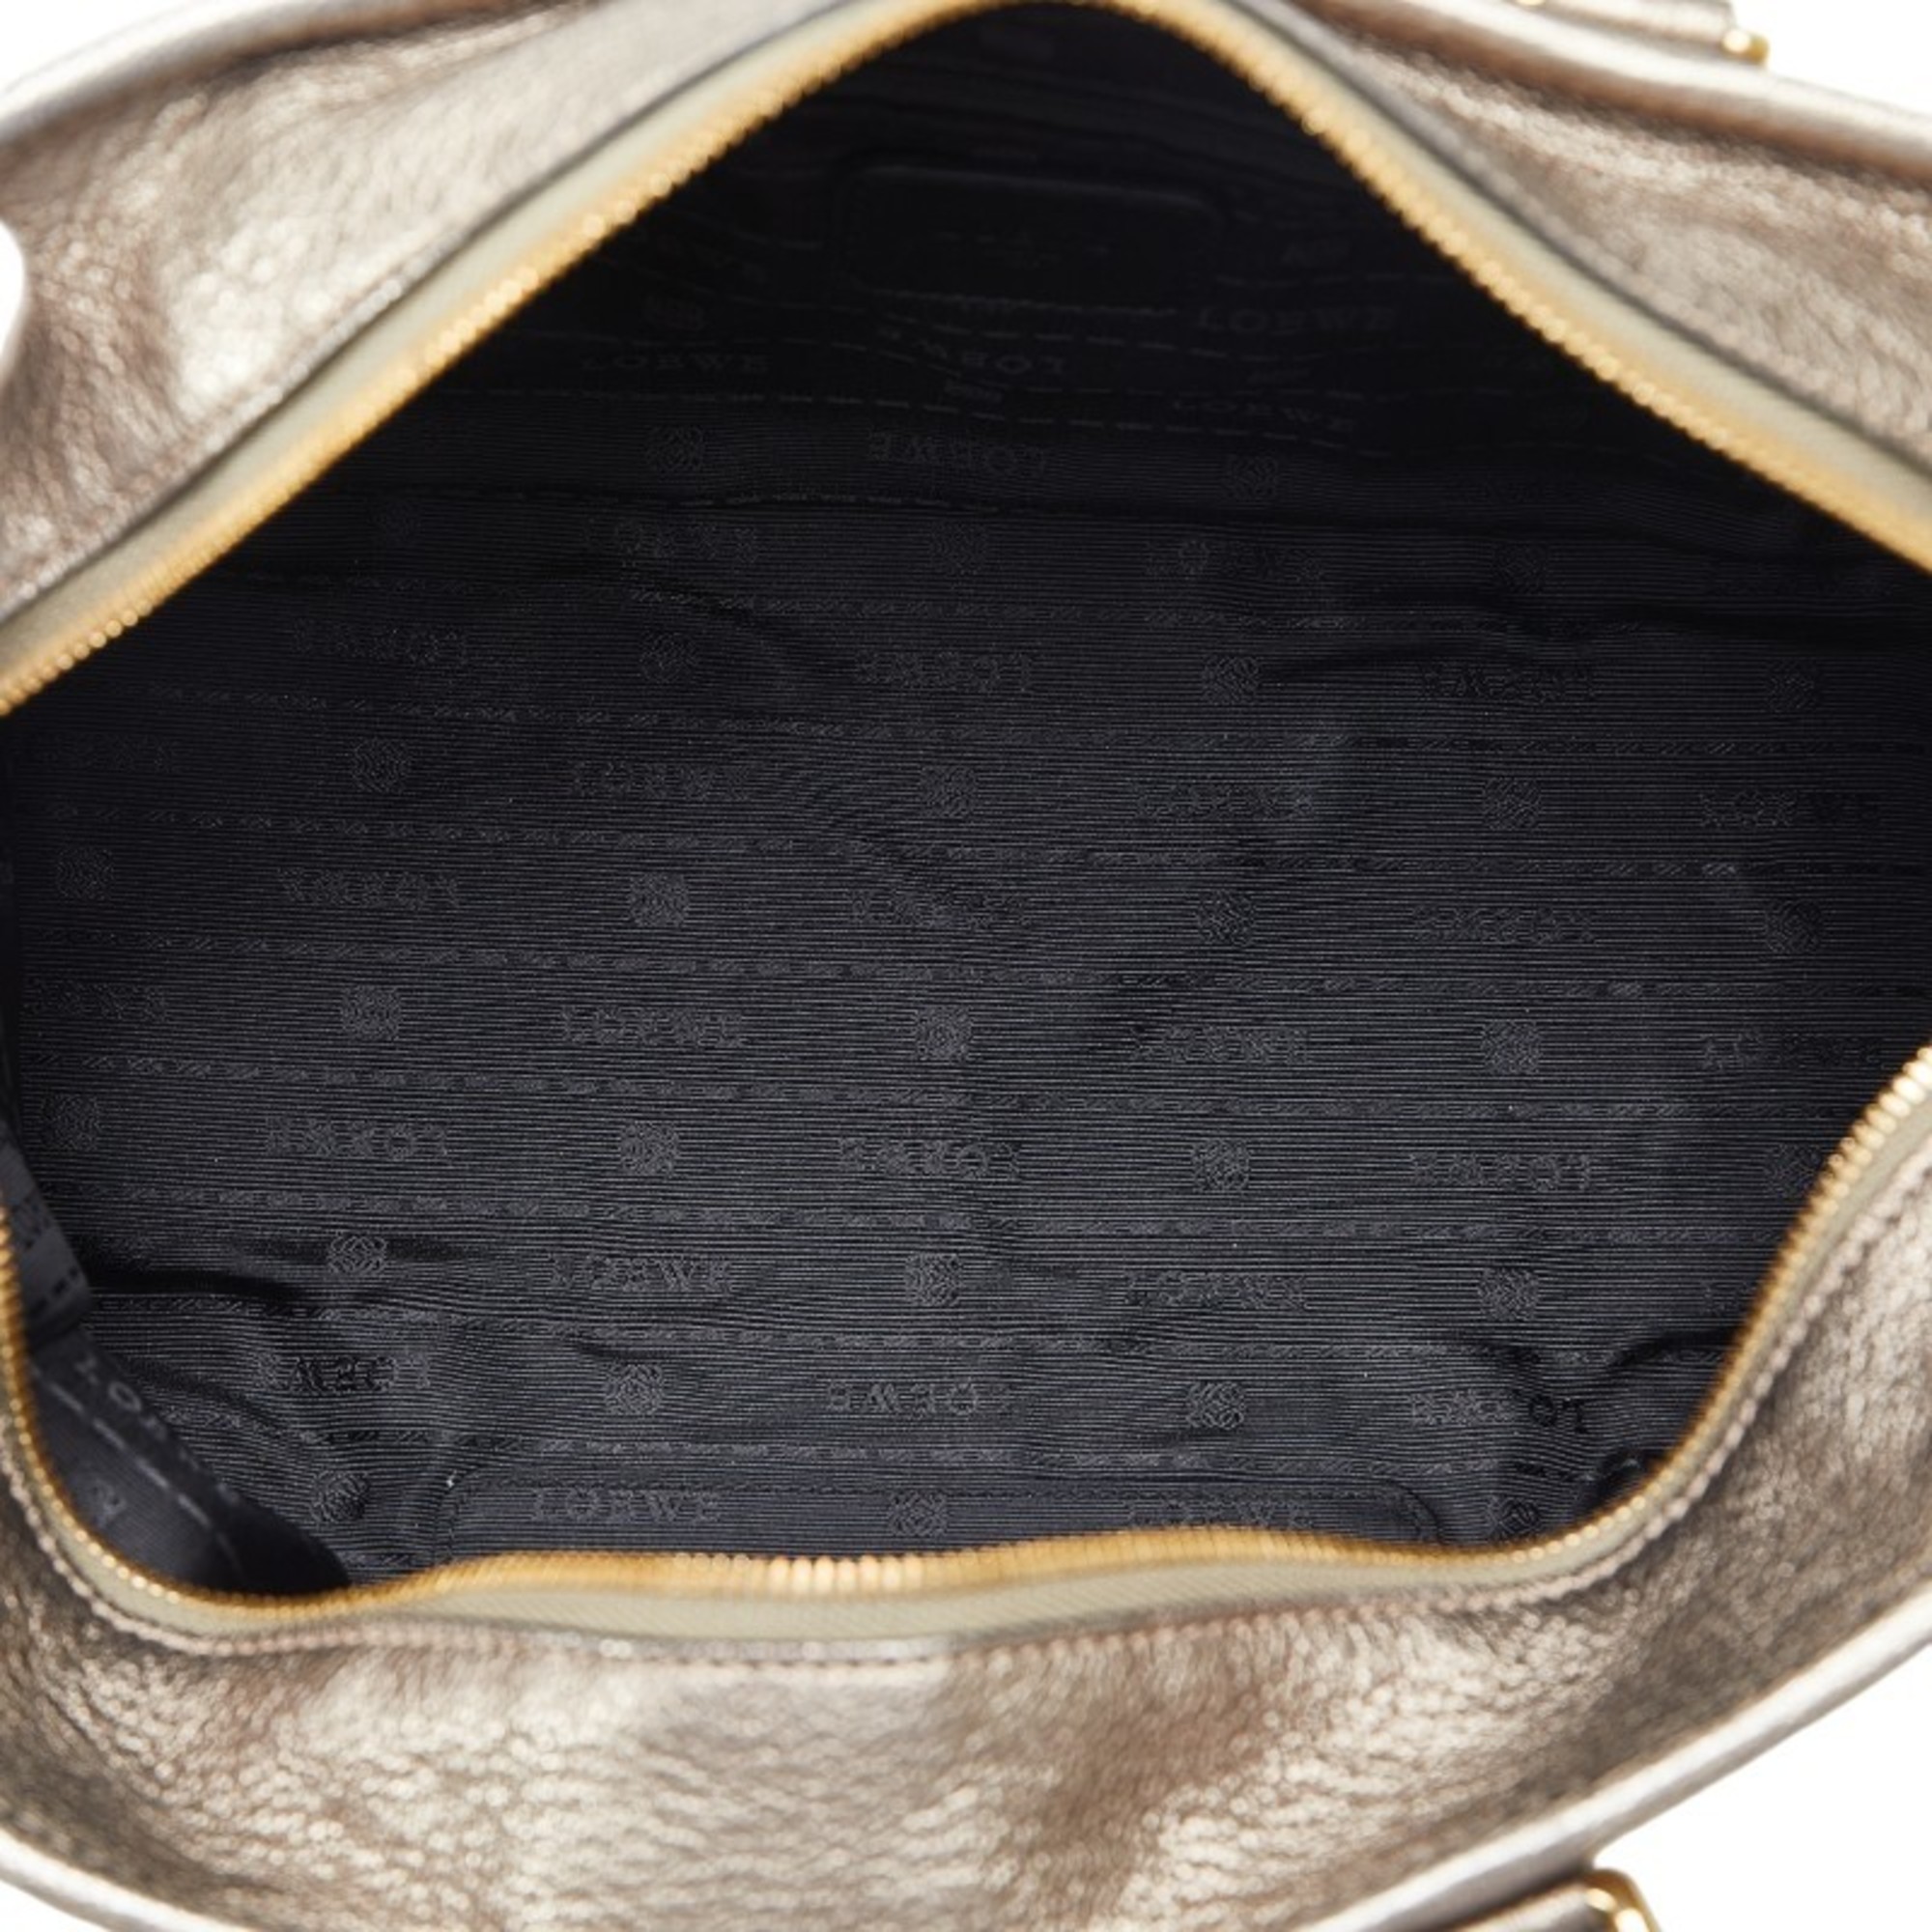 LOEWE Amazona 28 Anagram Handbag Gold Leather Women's